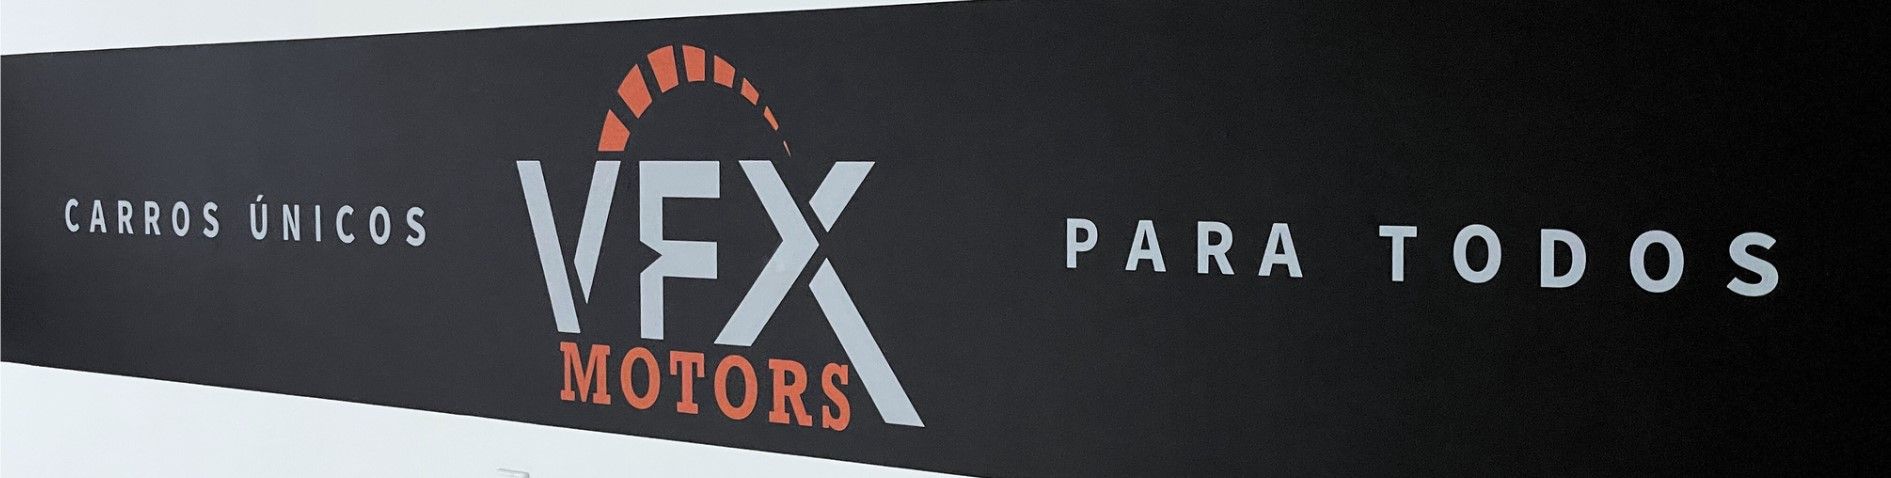 VFX Motors top banner